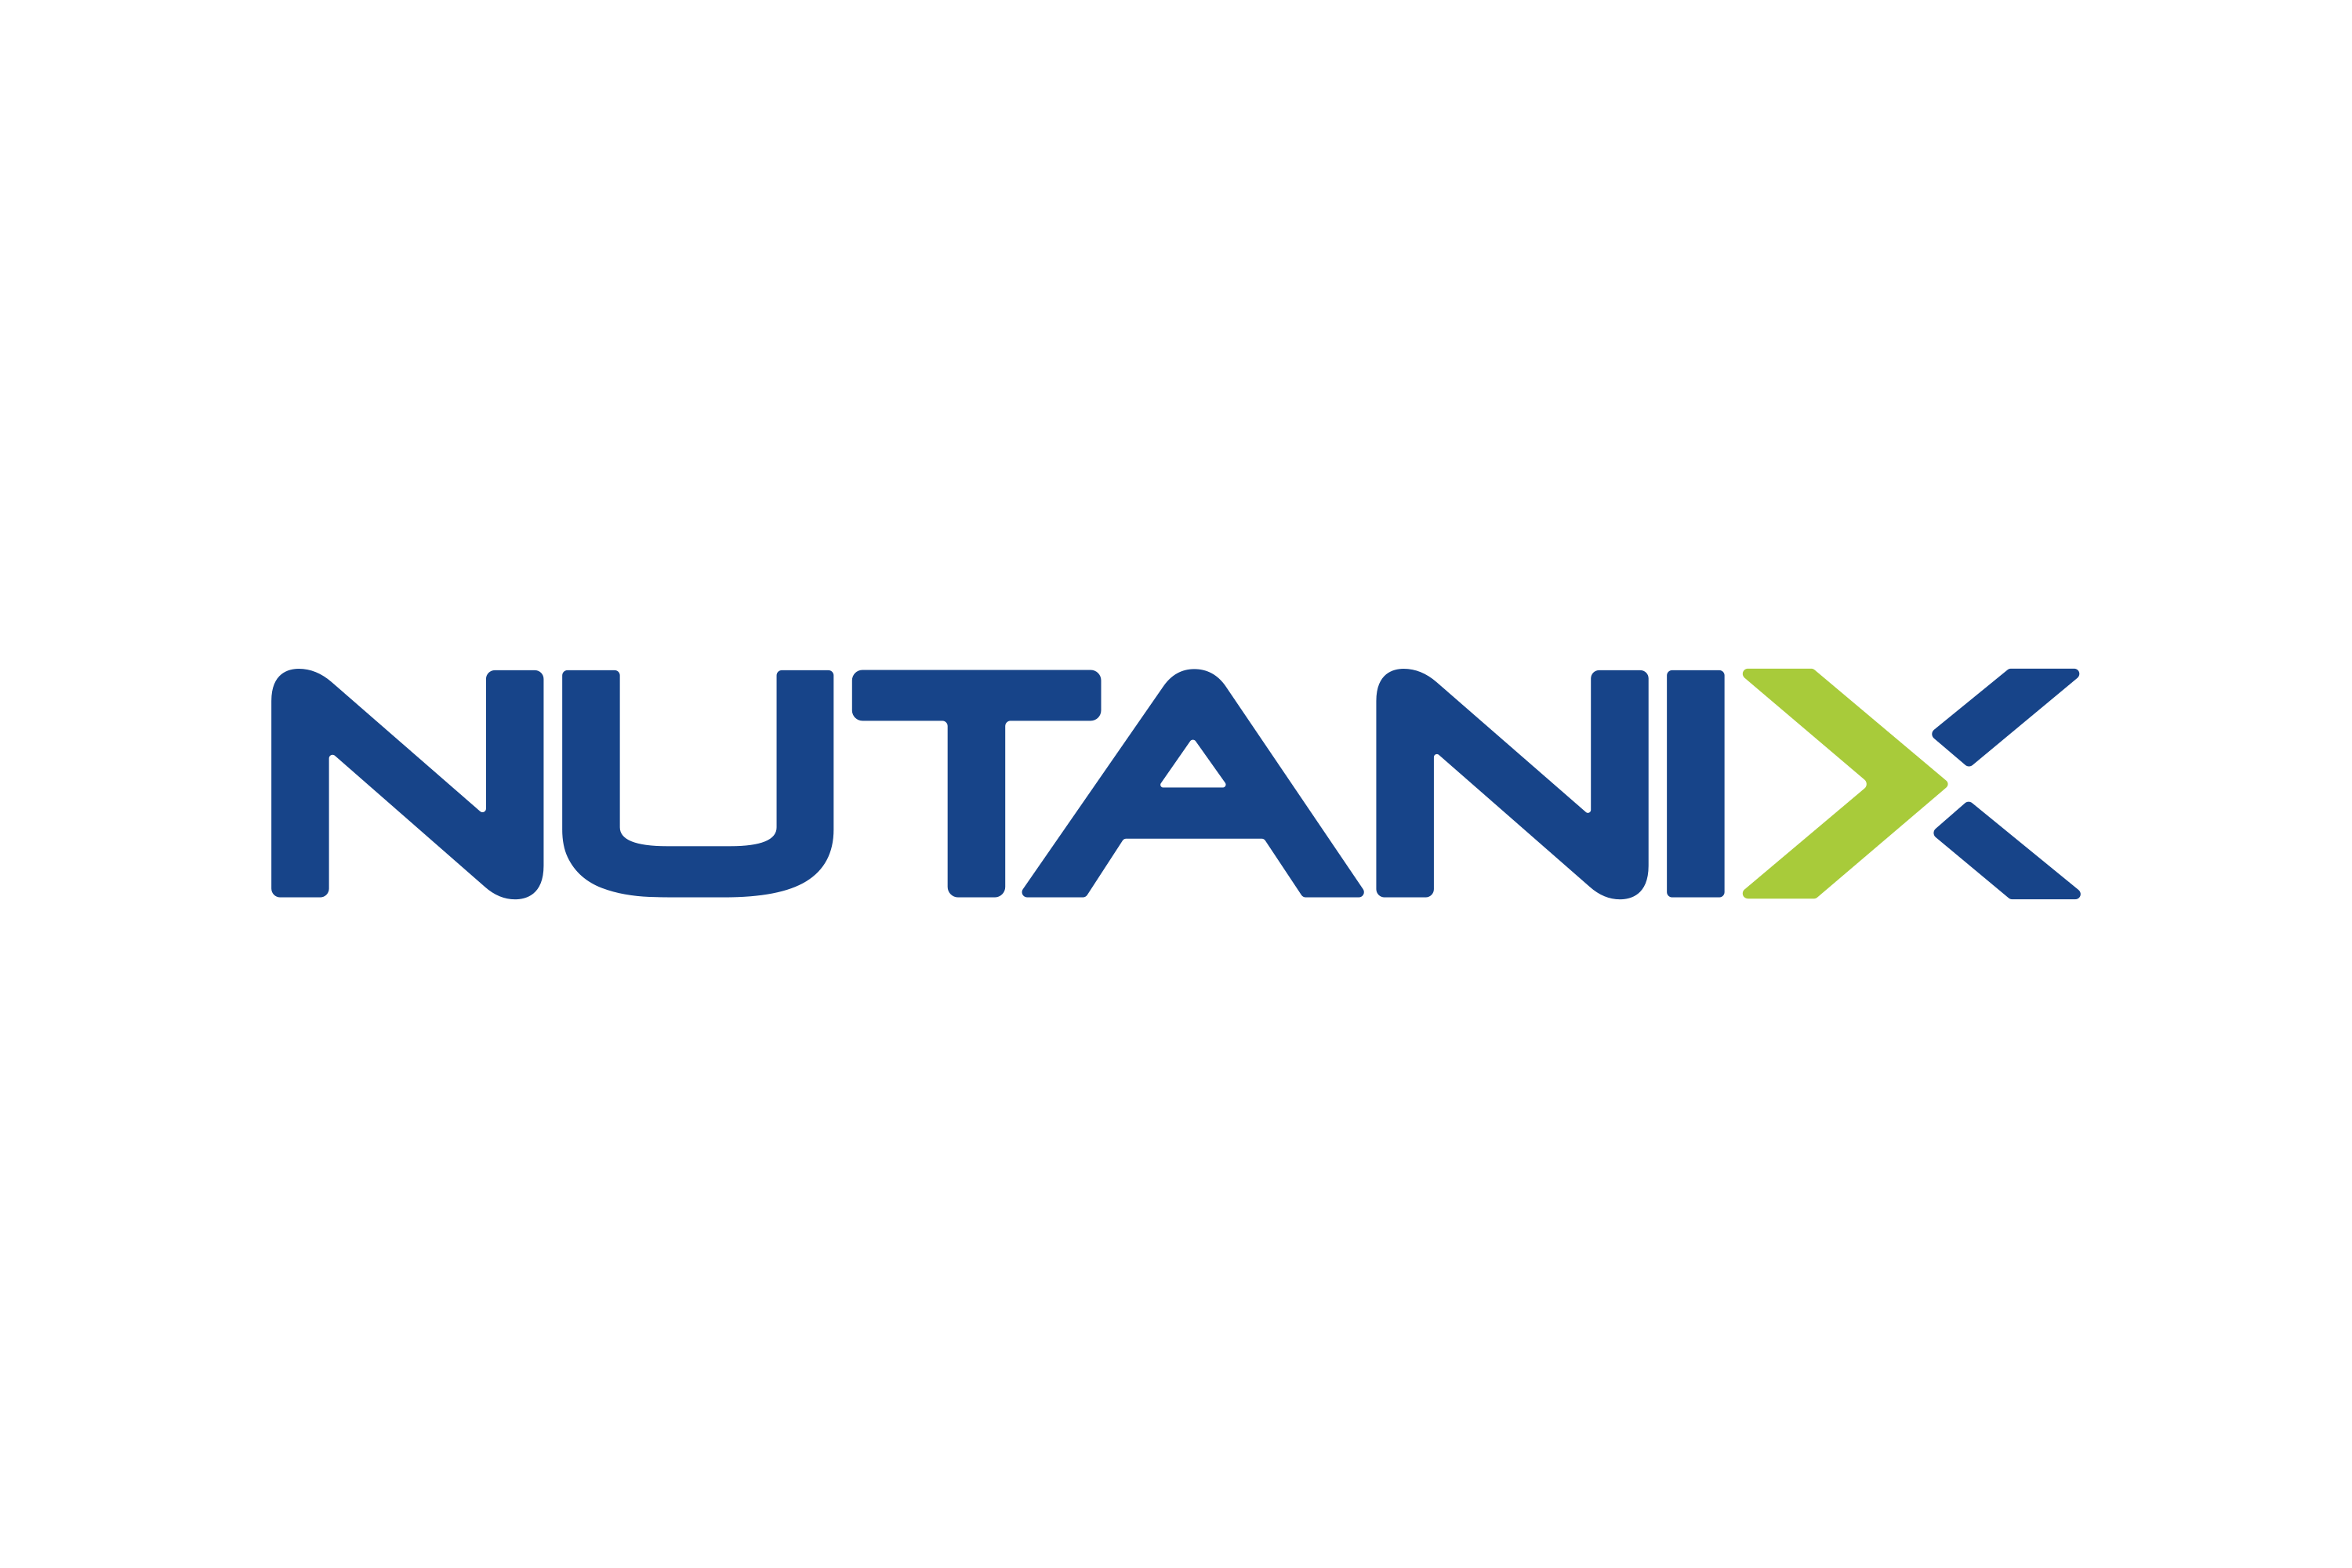 Nutanix Inc